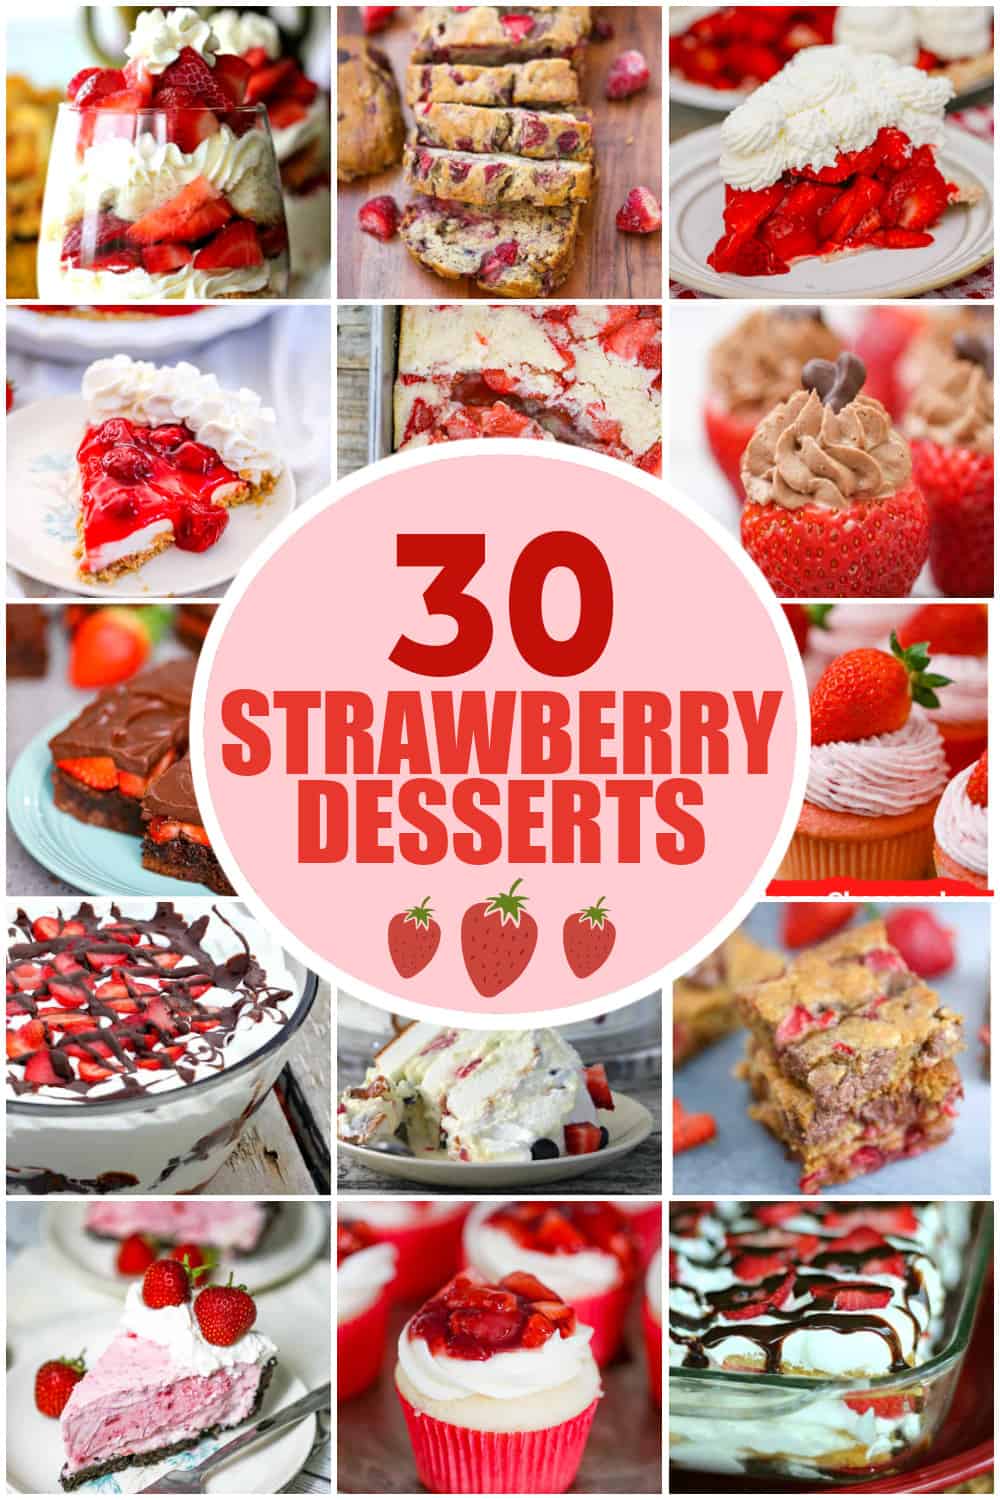 10 Dreamy Valentine Desserts